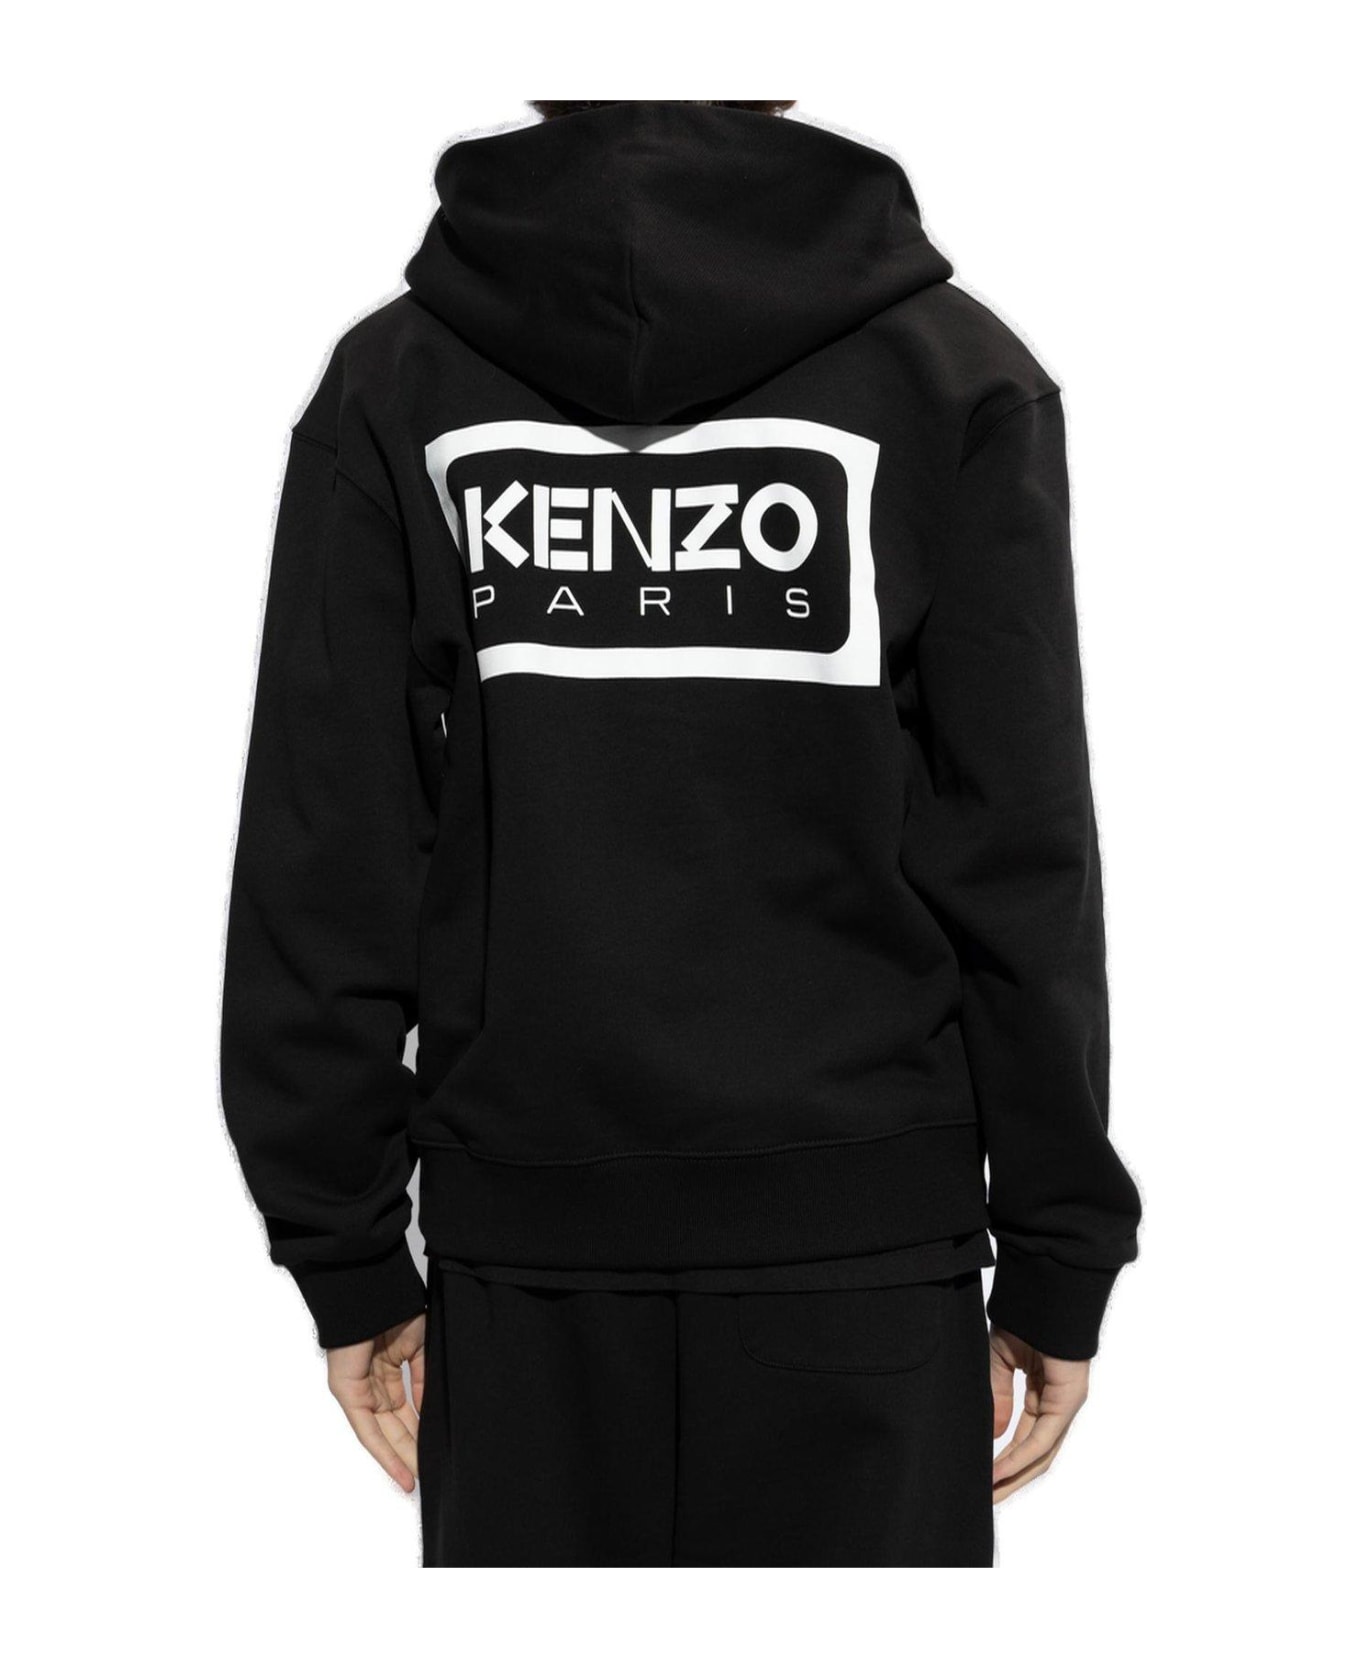 Kenzo Logo Embroidered Zip Up Hoodie Fleece - BLACK